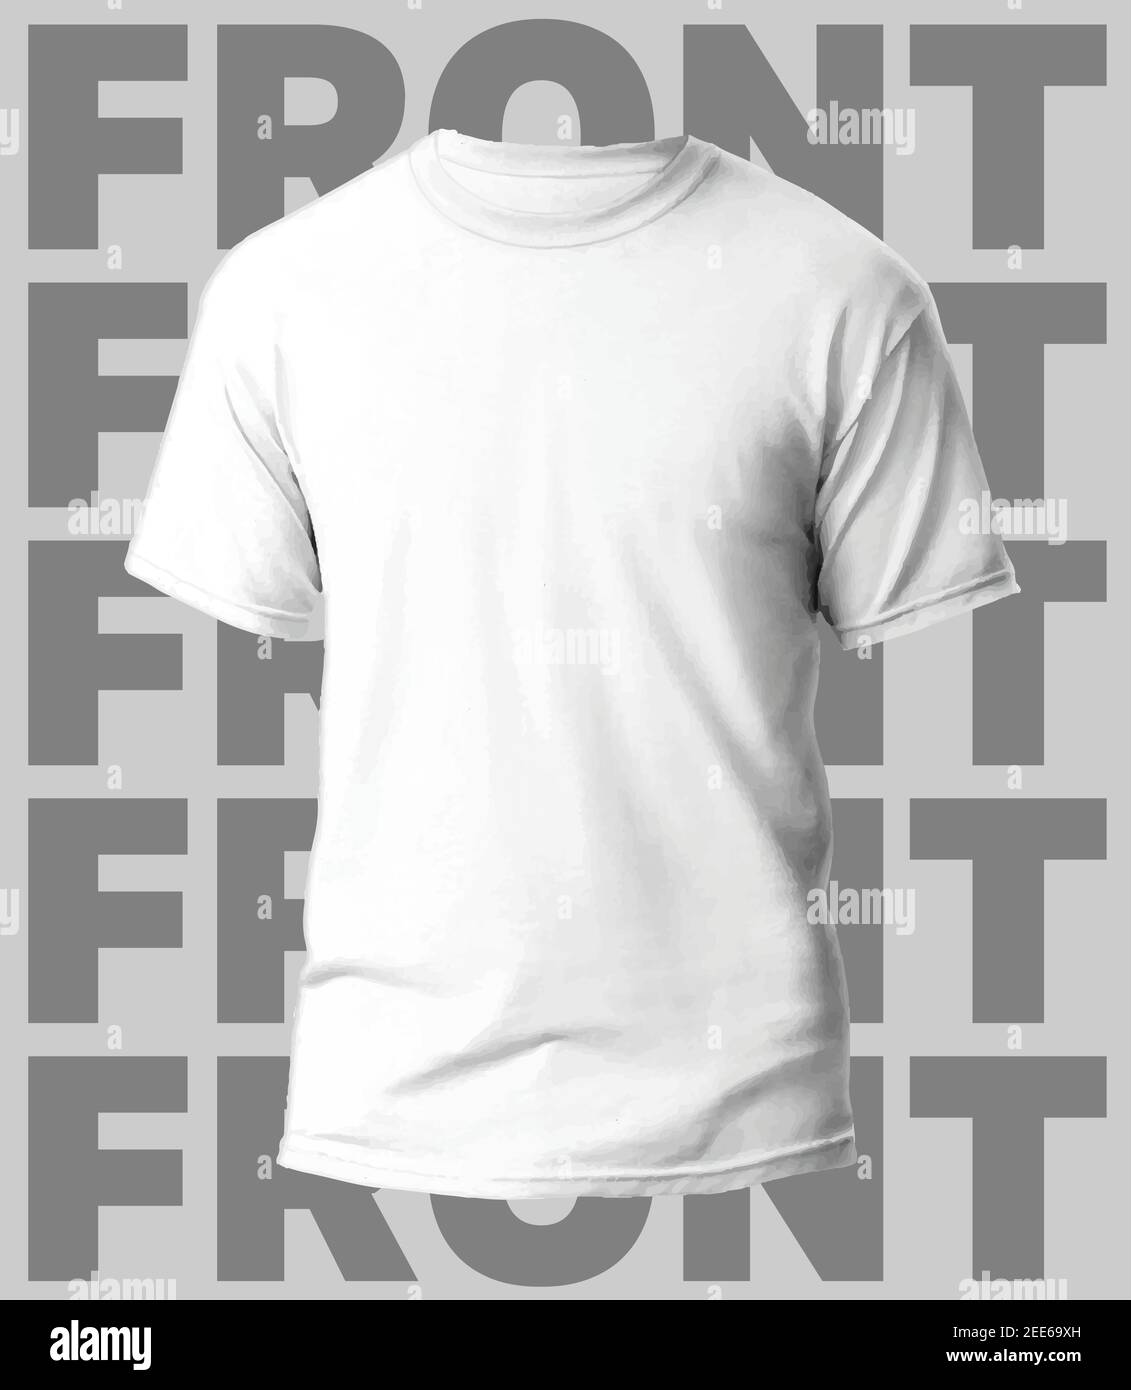 Logotipo de louis vuitton maqueta de camiseta en colores blancos maqueta de  camiseta realista con mangas cortas plantilla de camiseta en blanco con  espacio vacío para el diseño marca louisvuitton